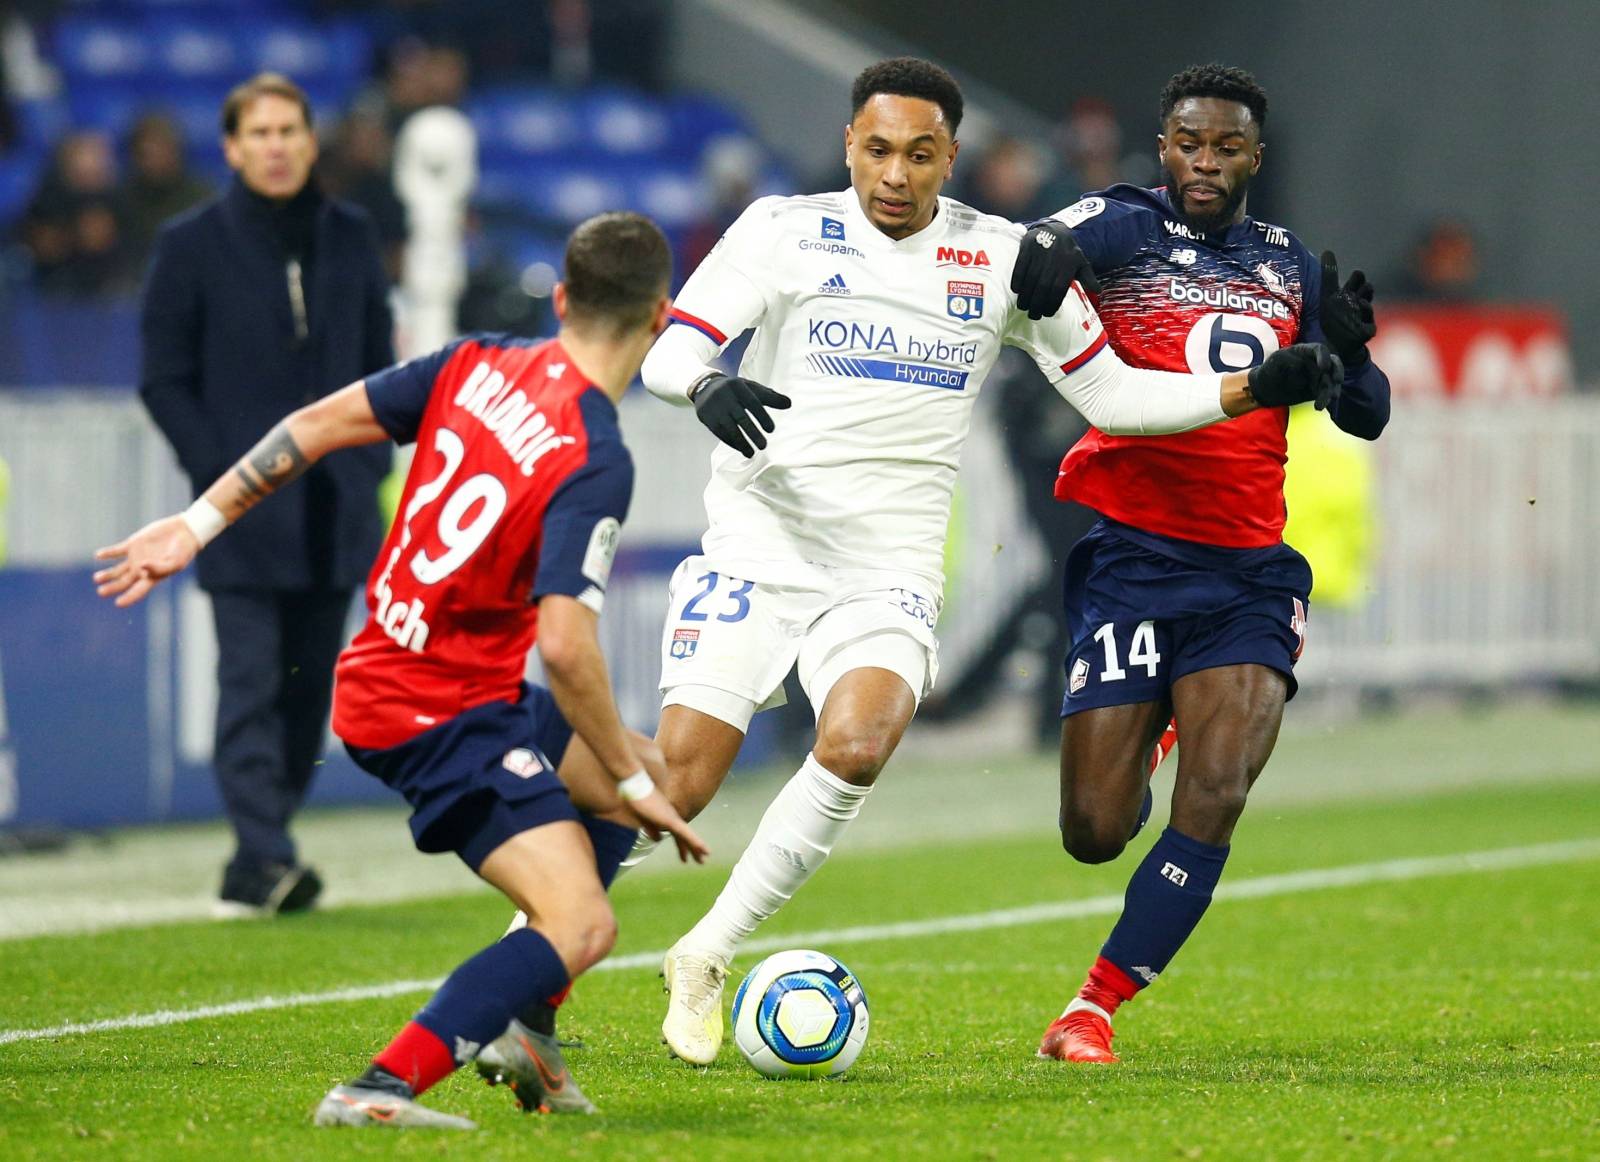 Ligue 1 - Olympique Lyonnais v Lille